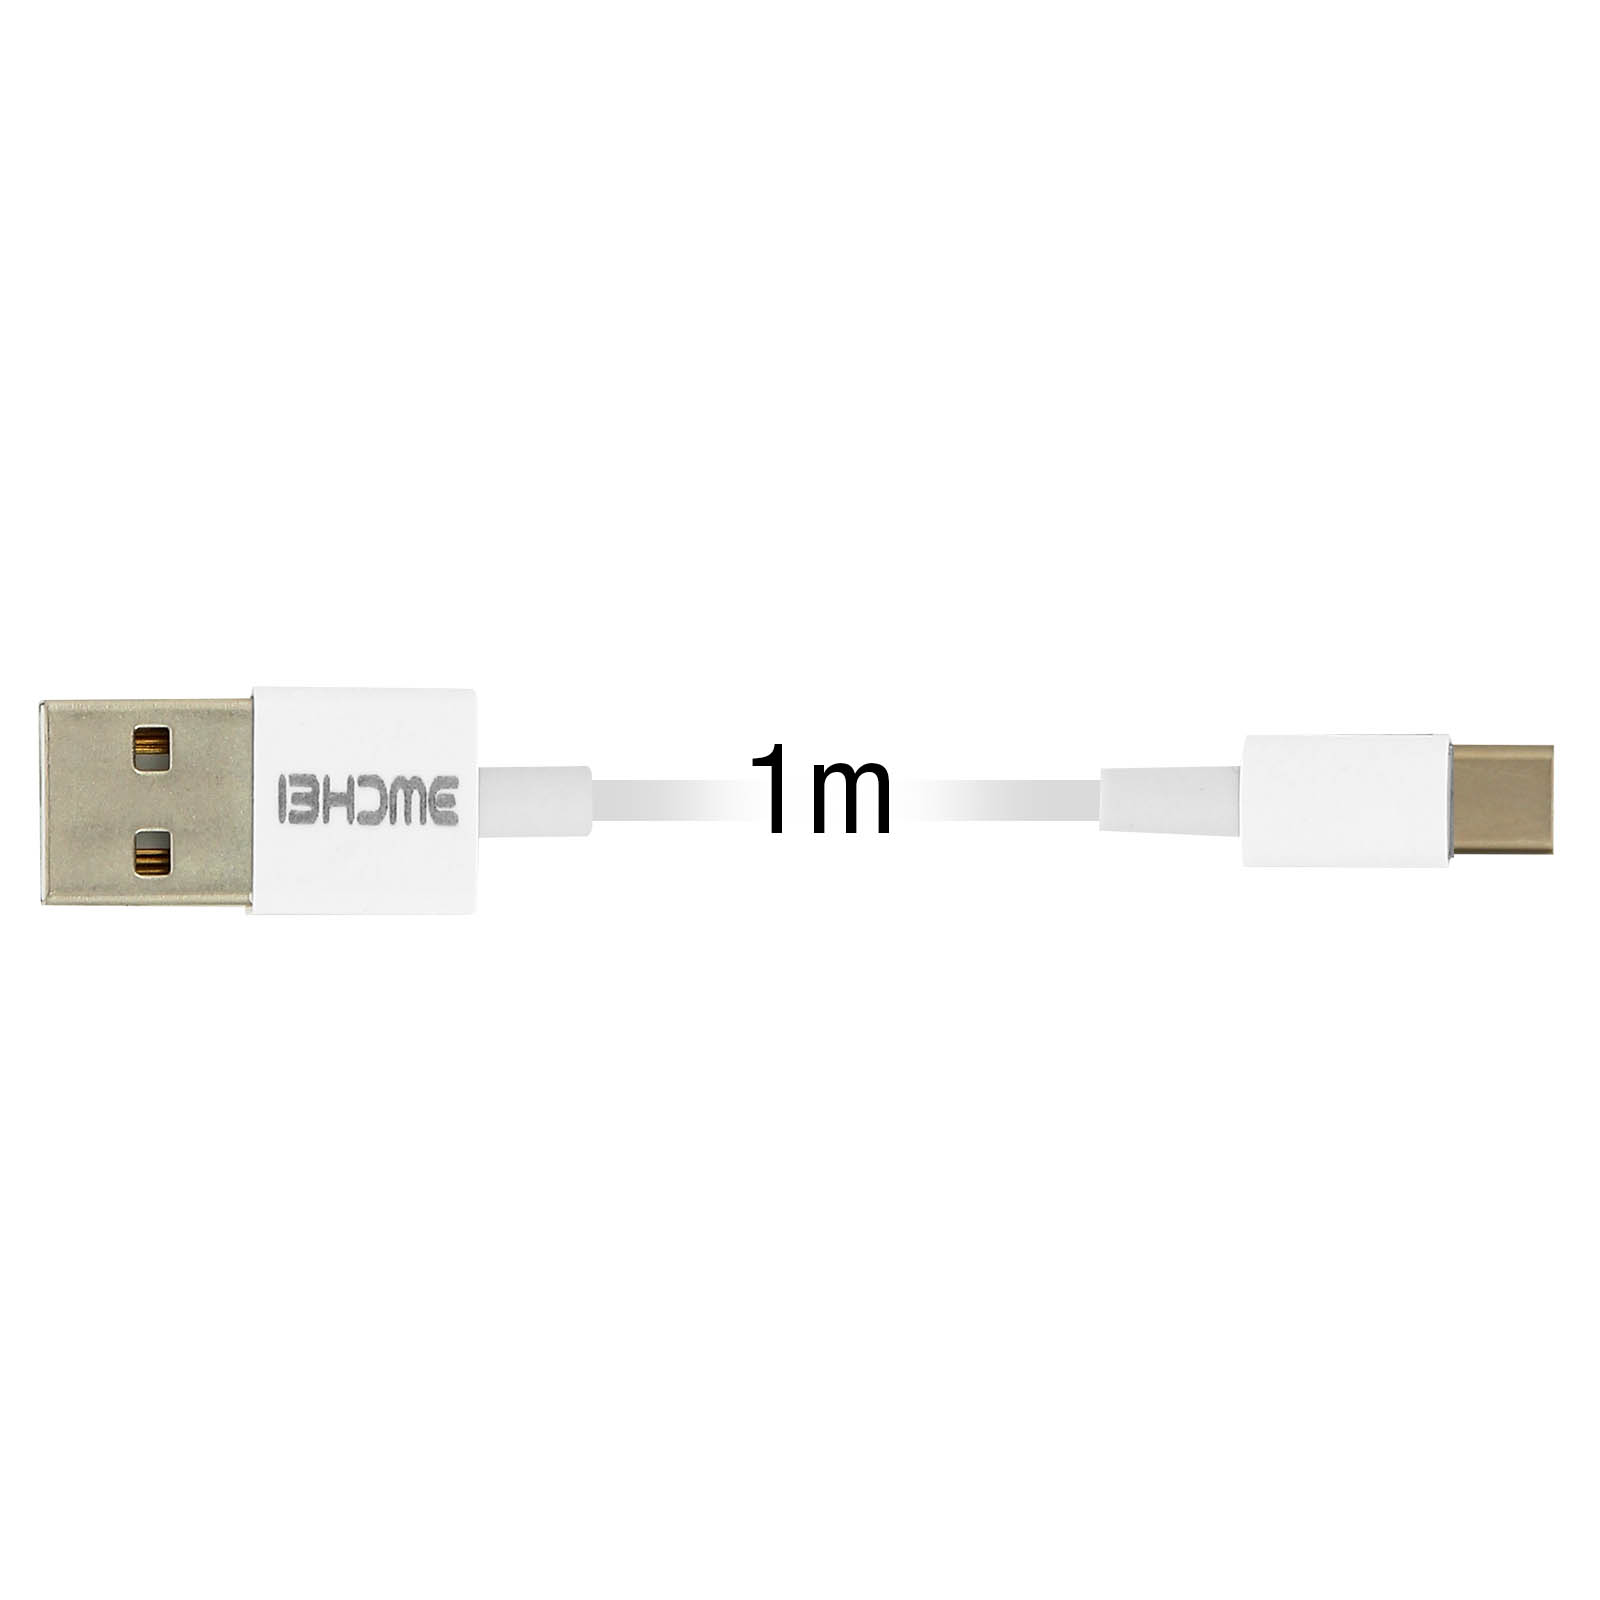 Weiß KFZ-Ladegerät Kabel USB-C + 2.1A Anschluss, Zigarettenanzünder Ladegerät Ladesets mit Universal, Netzteil + AVIZAR